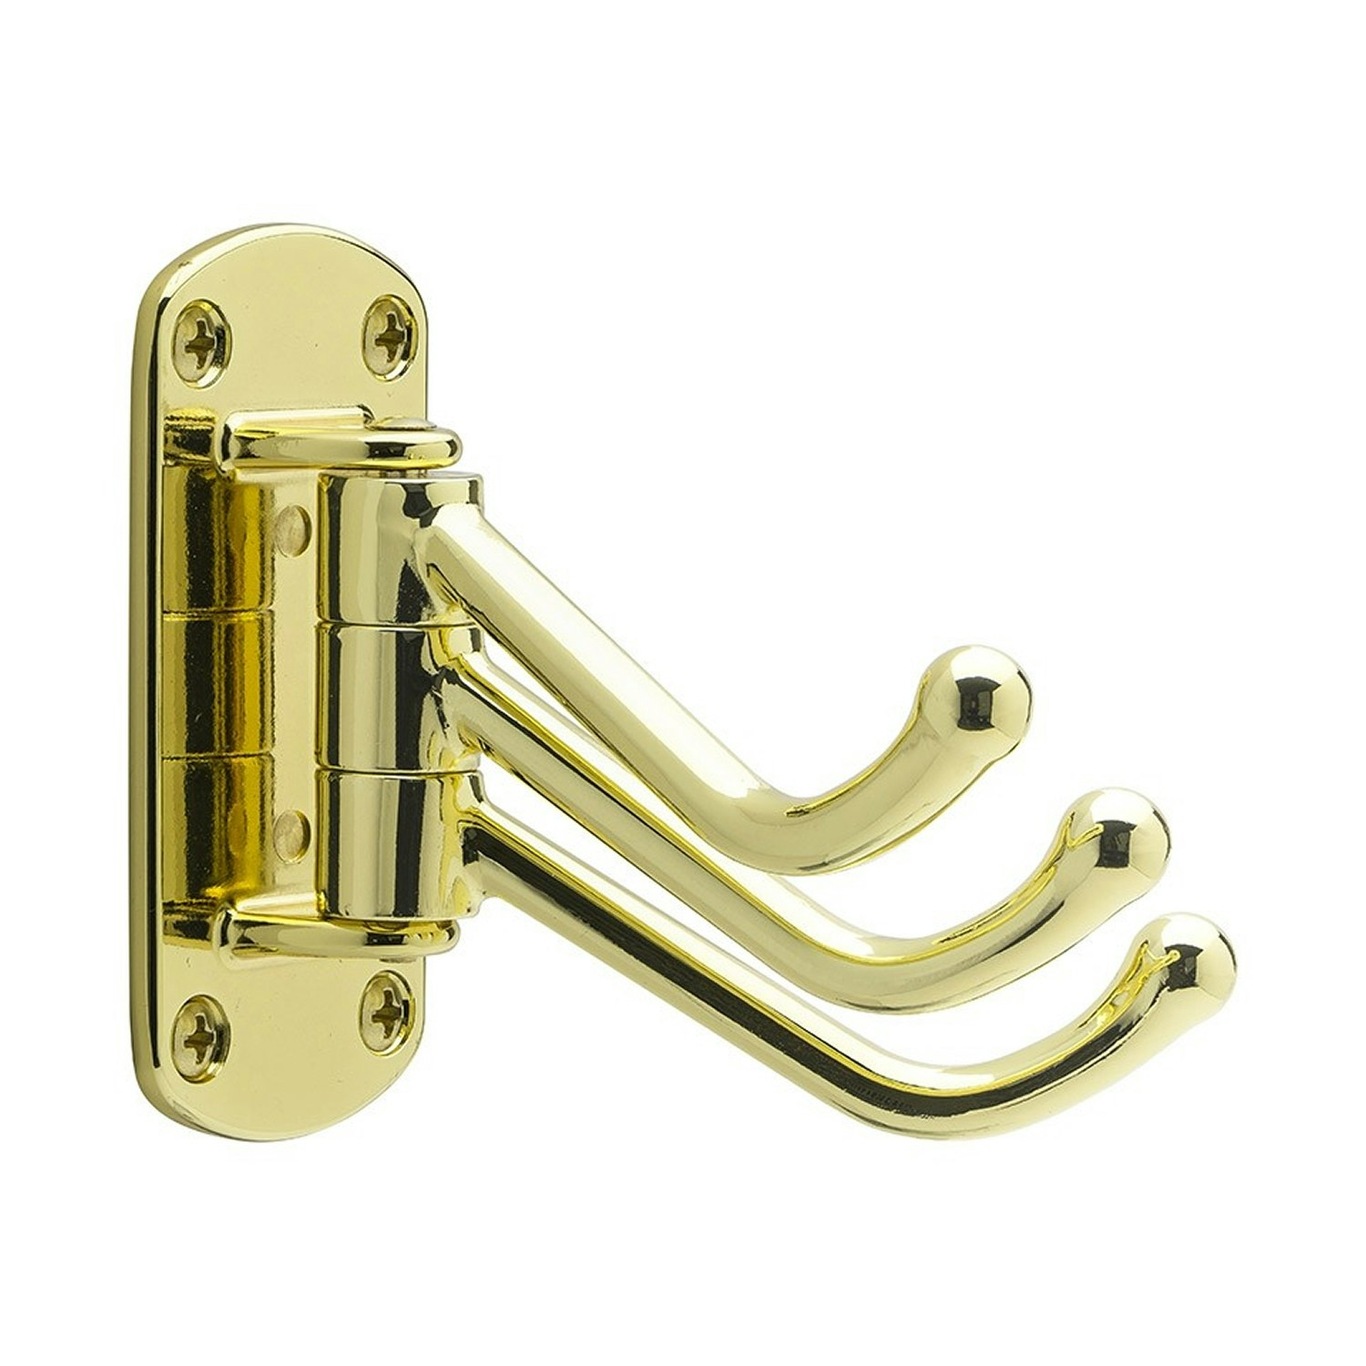 https://royaldesign.com/image/11/beslag-design-lyr-hook-polished-brass-0?w=800&quality=80